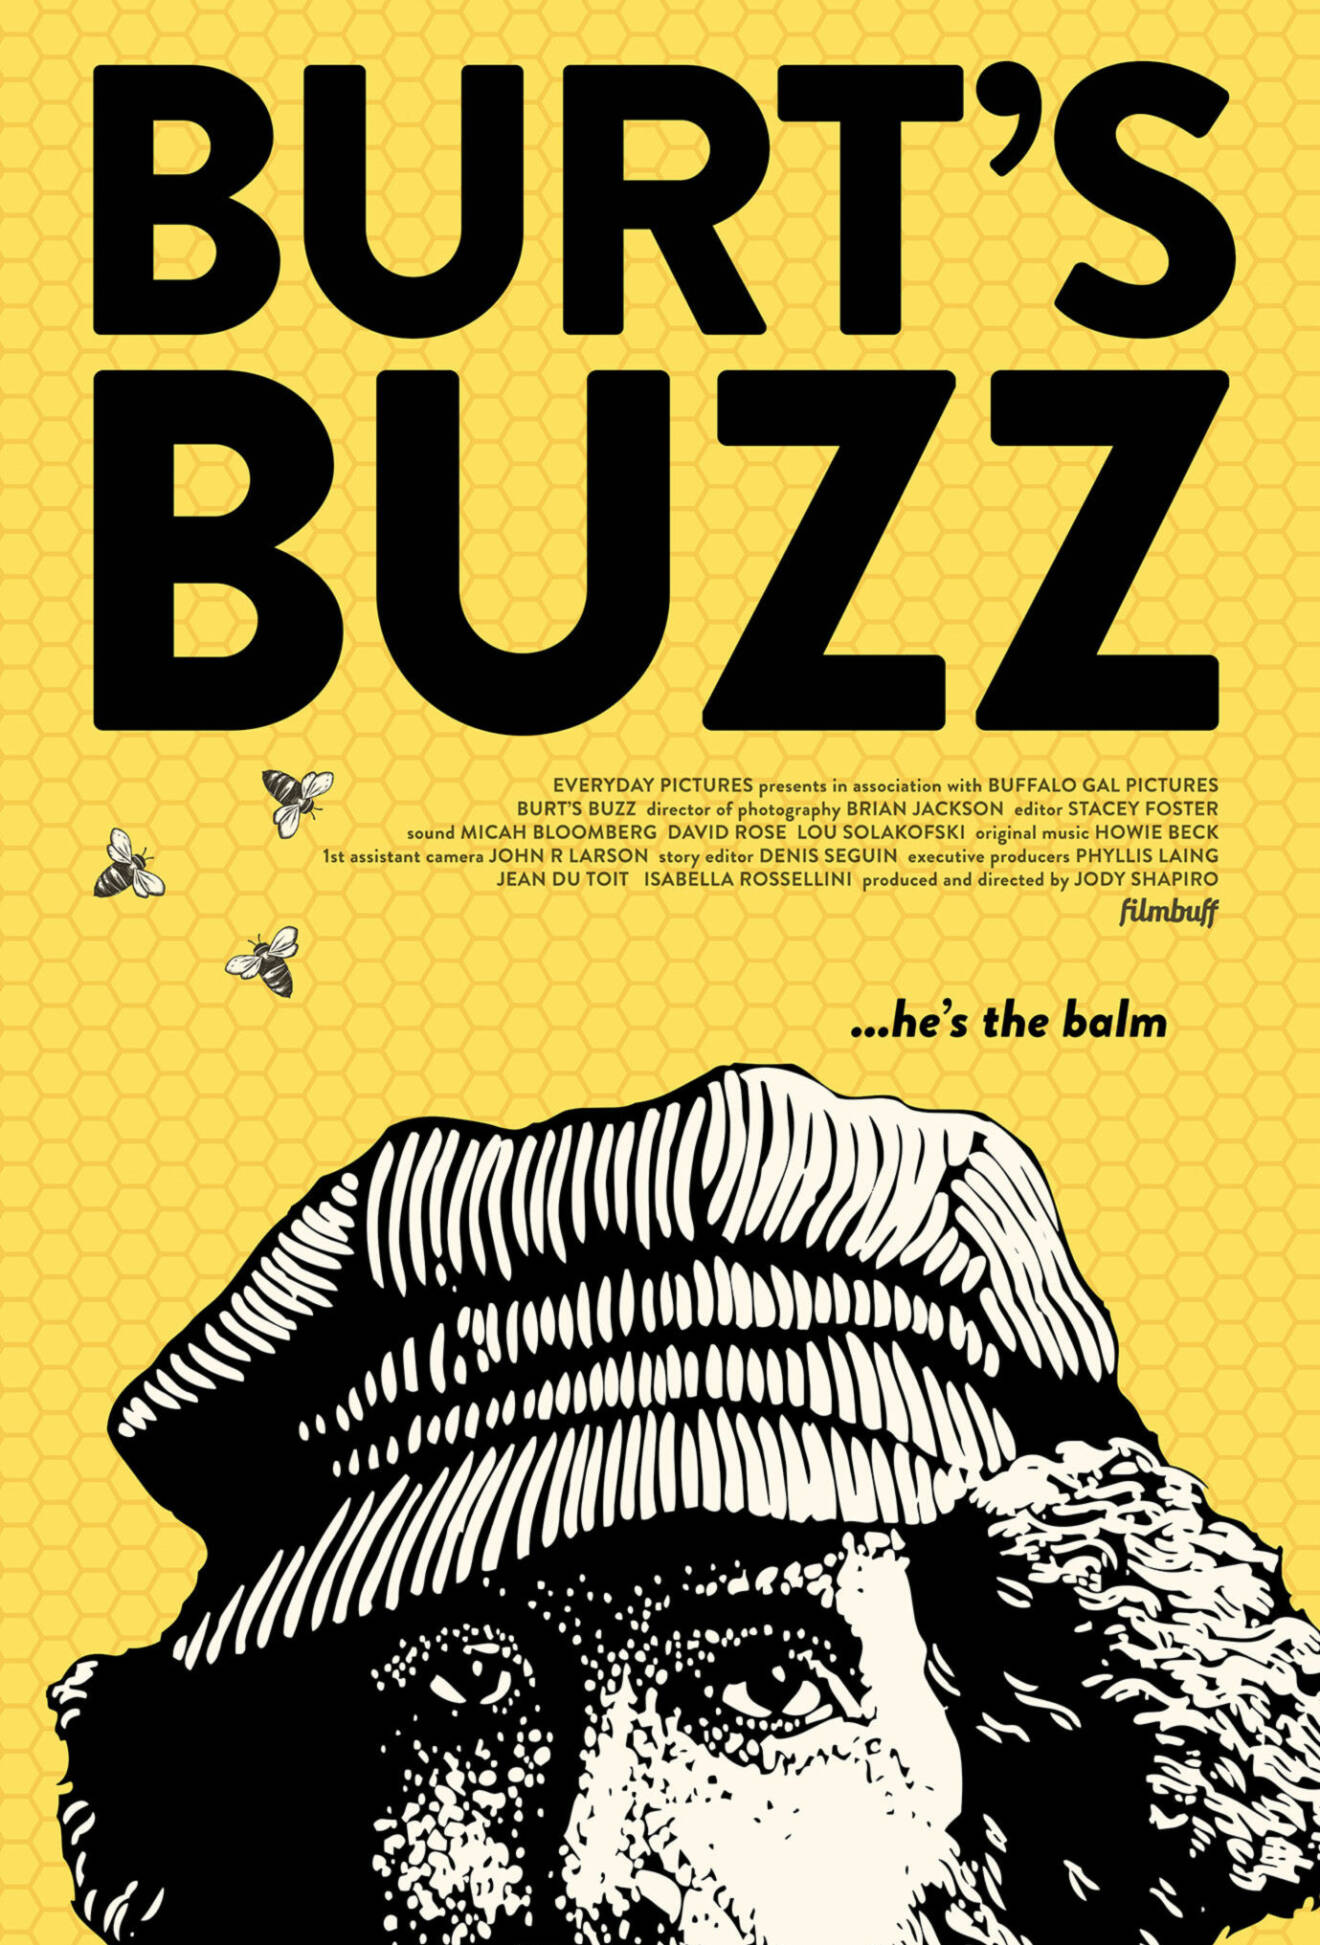 2013 gjordes det en dokumentärfilm om Burt, hans lugna liv i Maine och hans företag Burt's Bees.